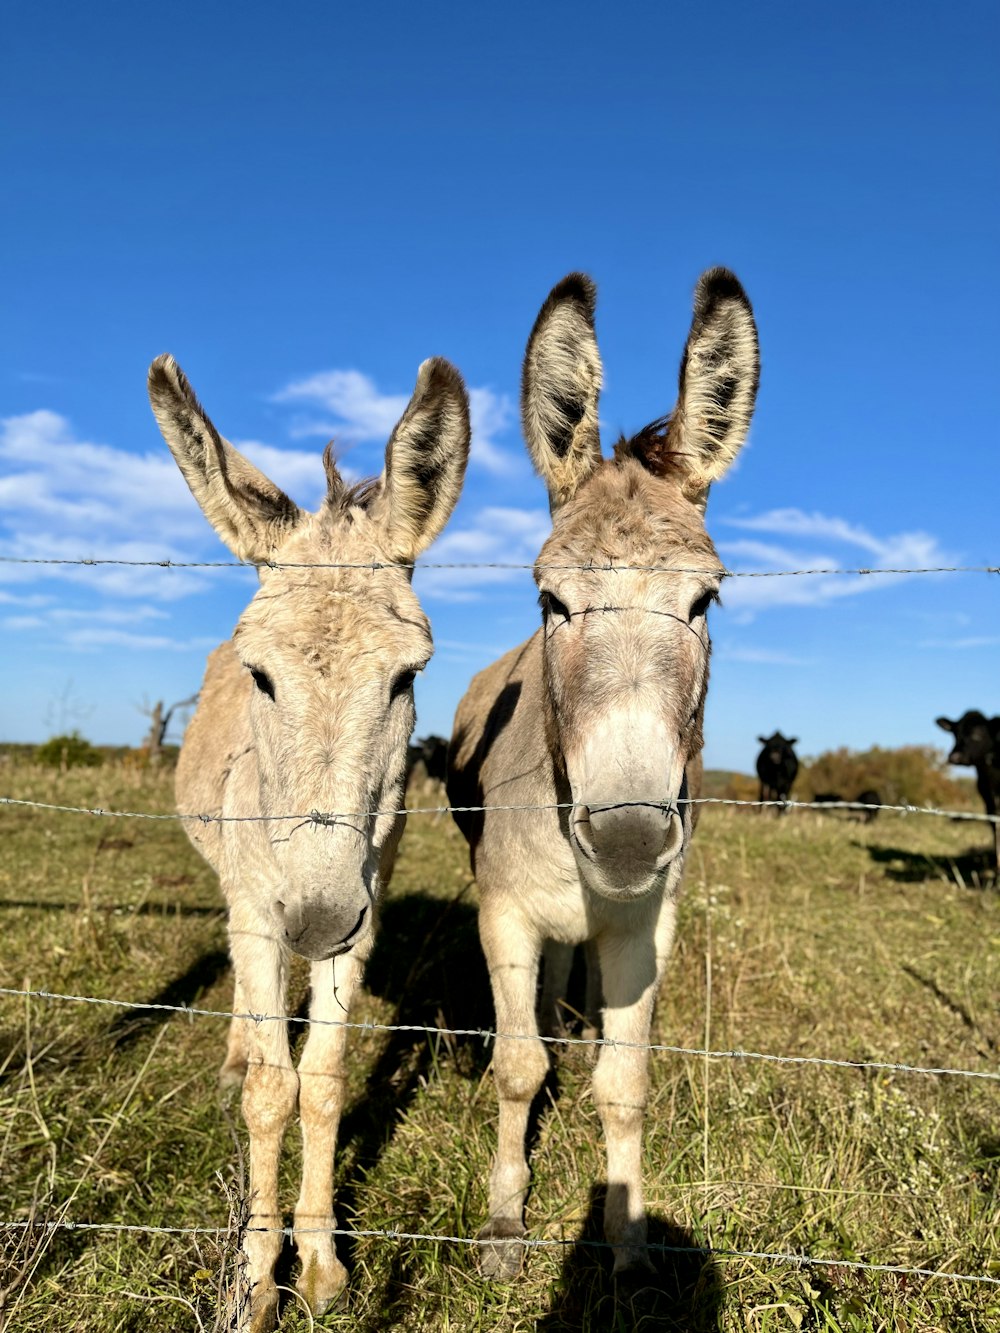 a couple of donkeys in a field